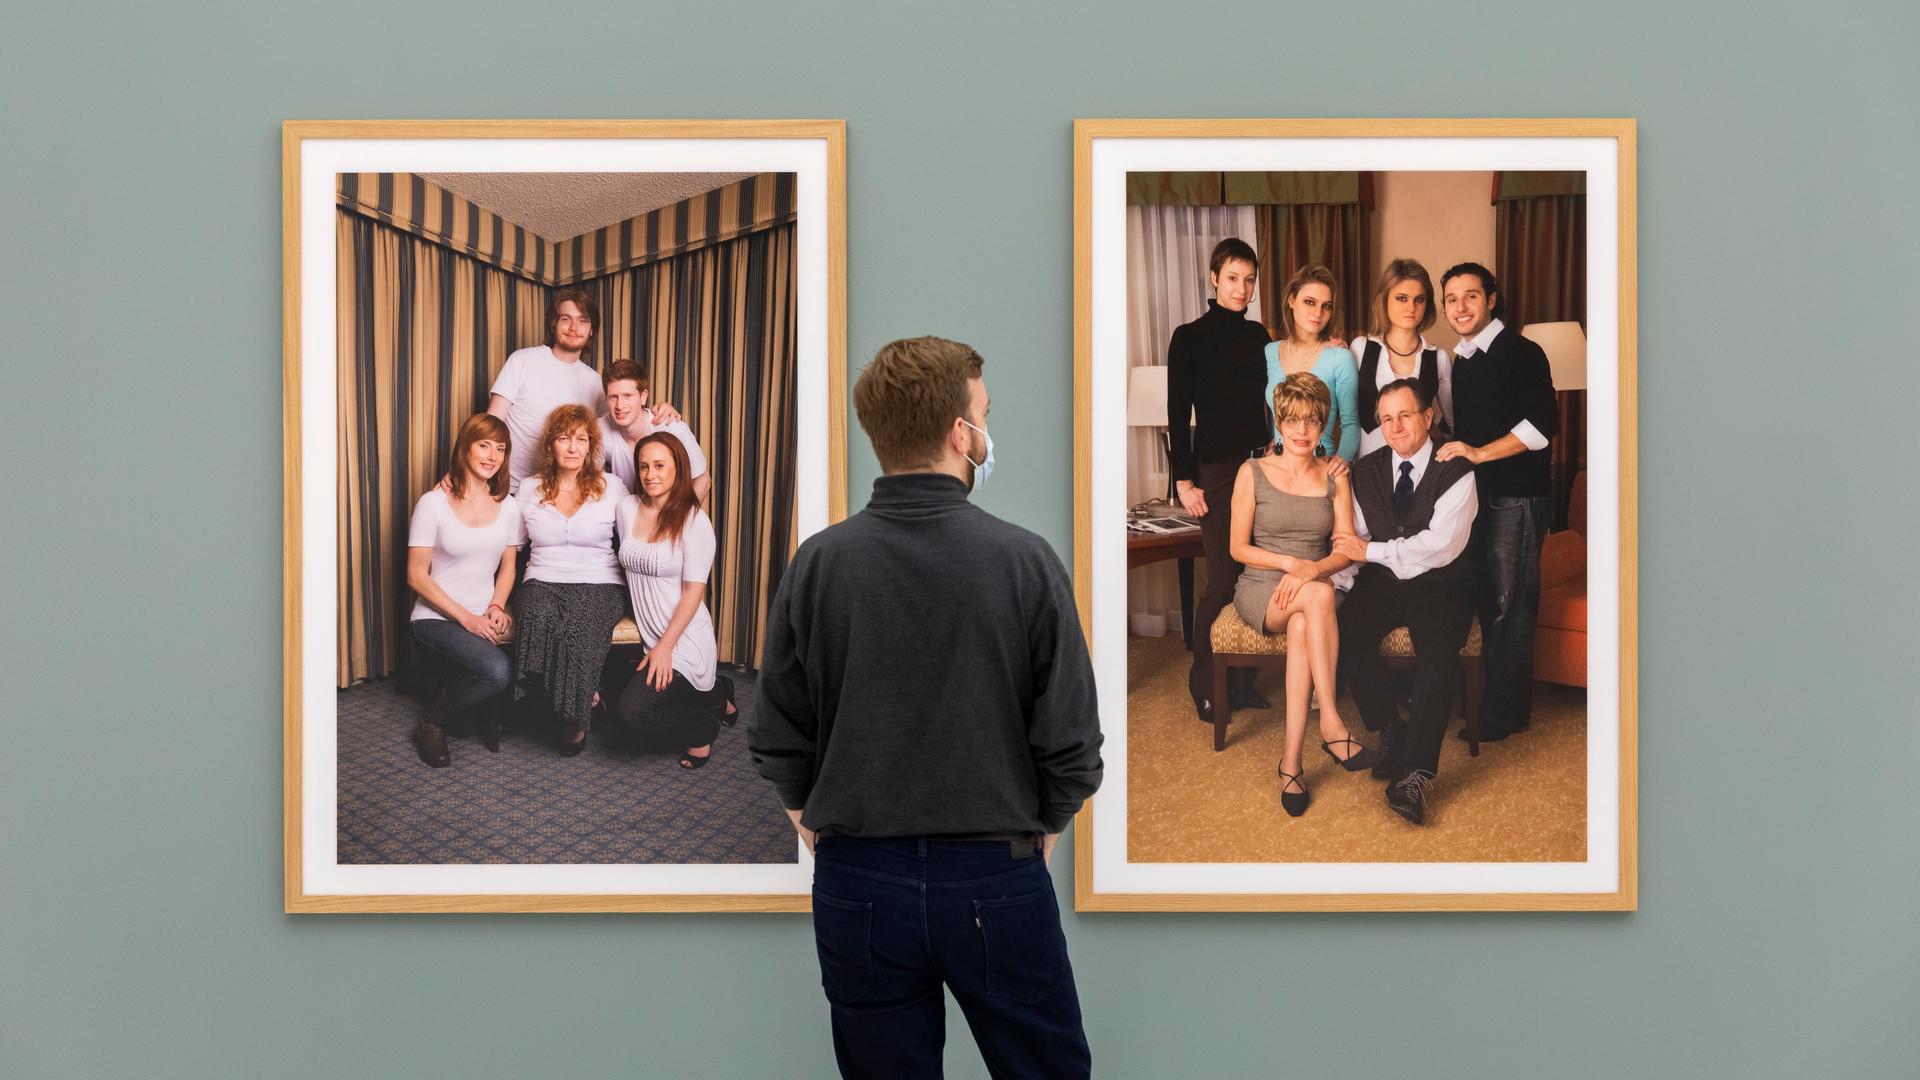 Ein Mann steht in einer Ausstellung vor zwei Fotografien, die jeweils eine Familie porträtieren.